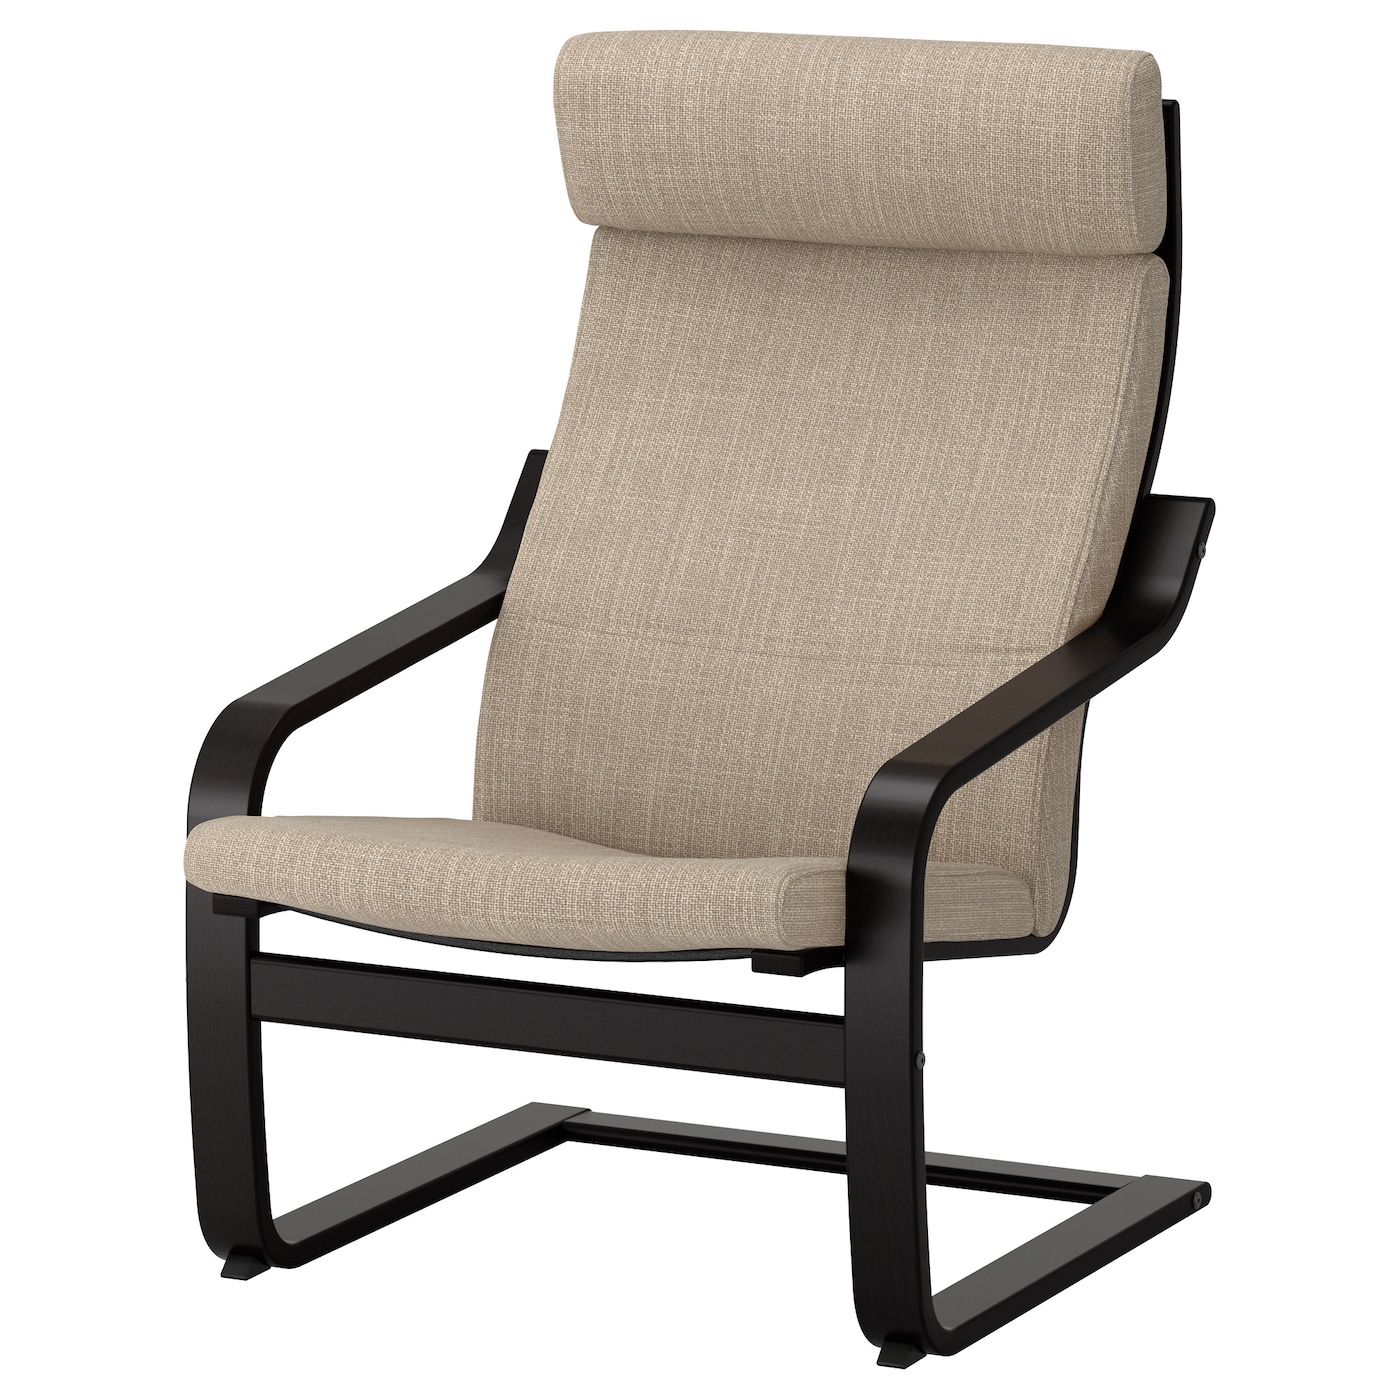 ПОЭНГ Кресло, черно-коричневый/Хилларед бежевый POÄNG IKEA